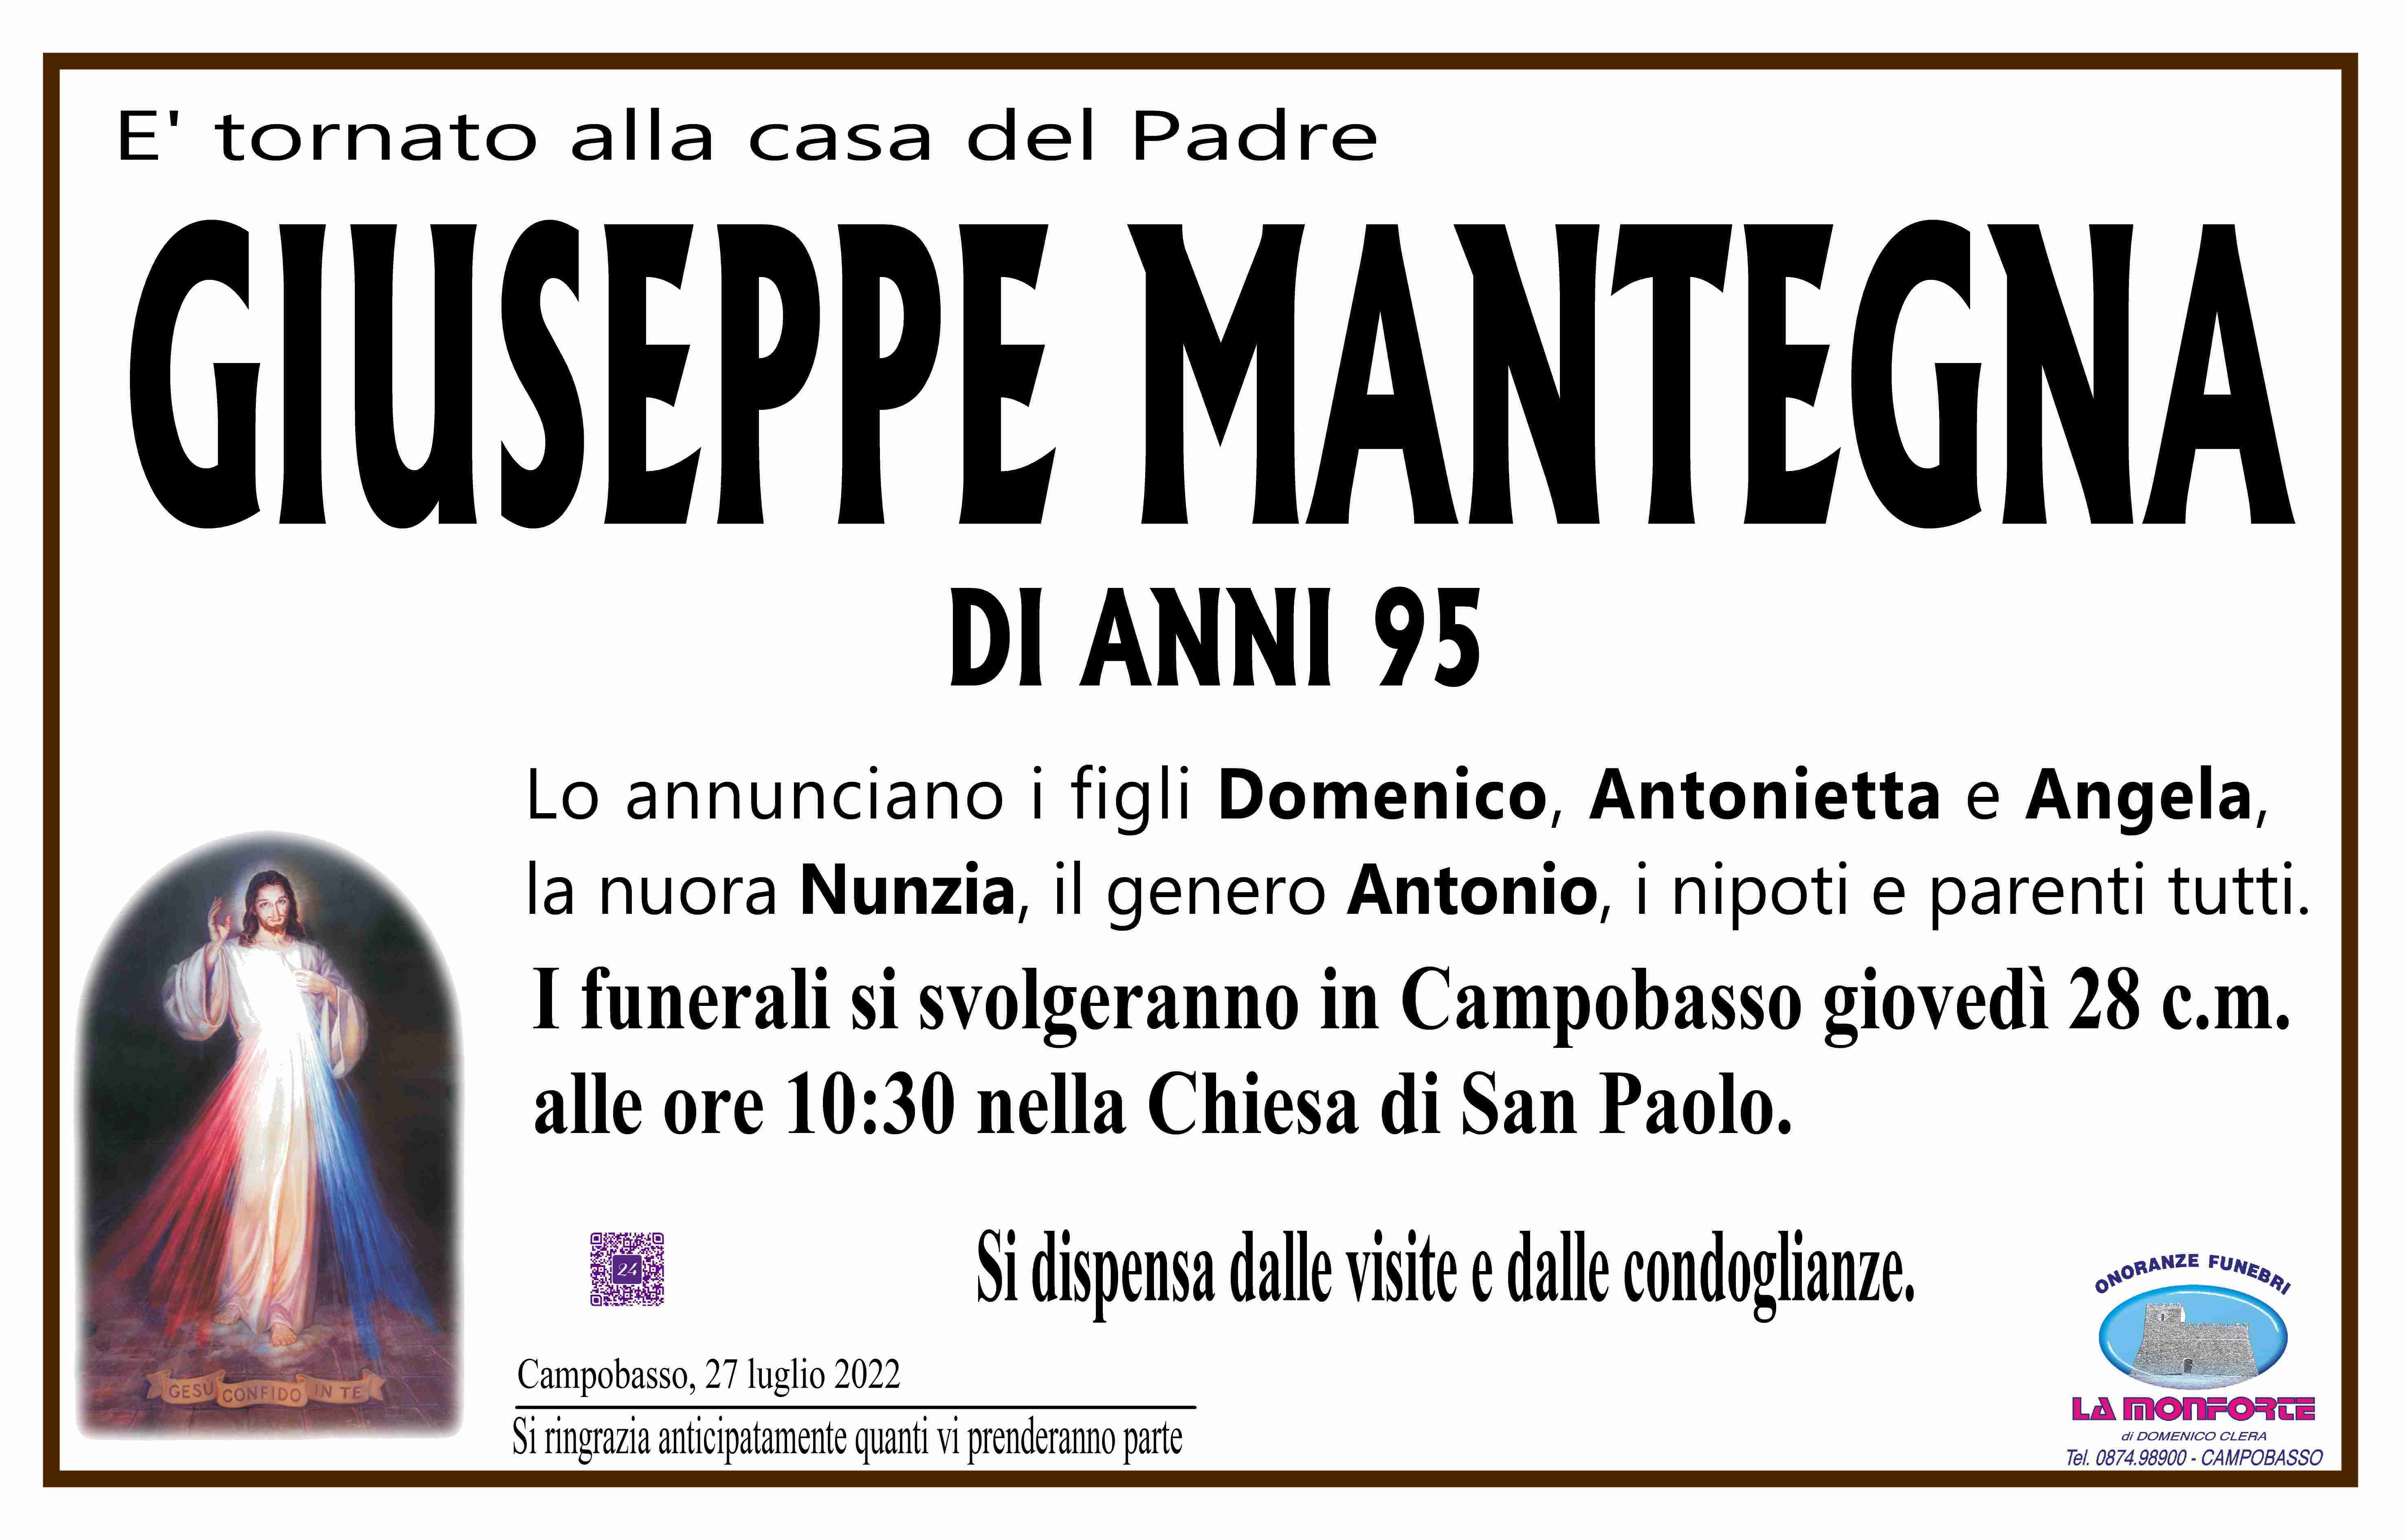 Giuseppe Mantegna